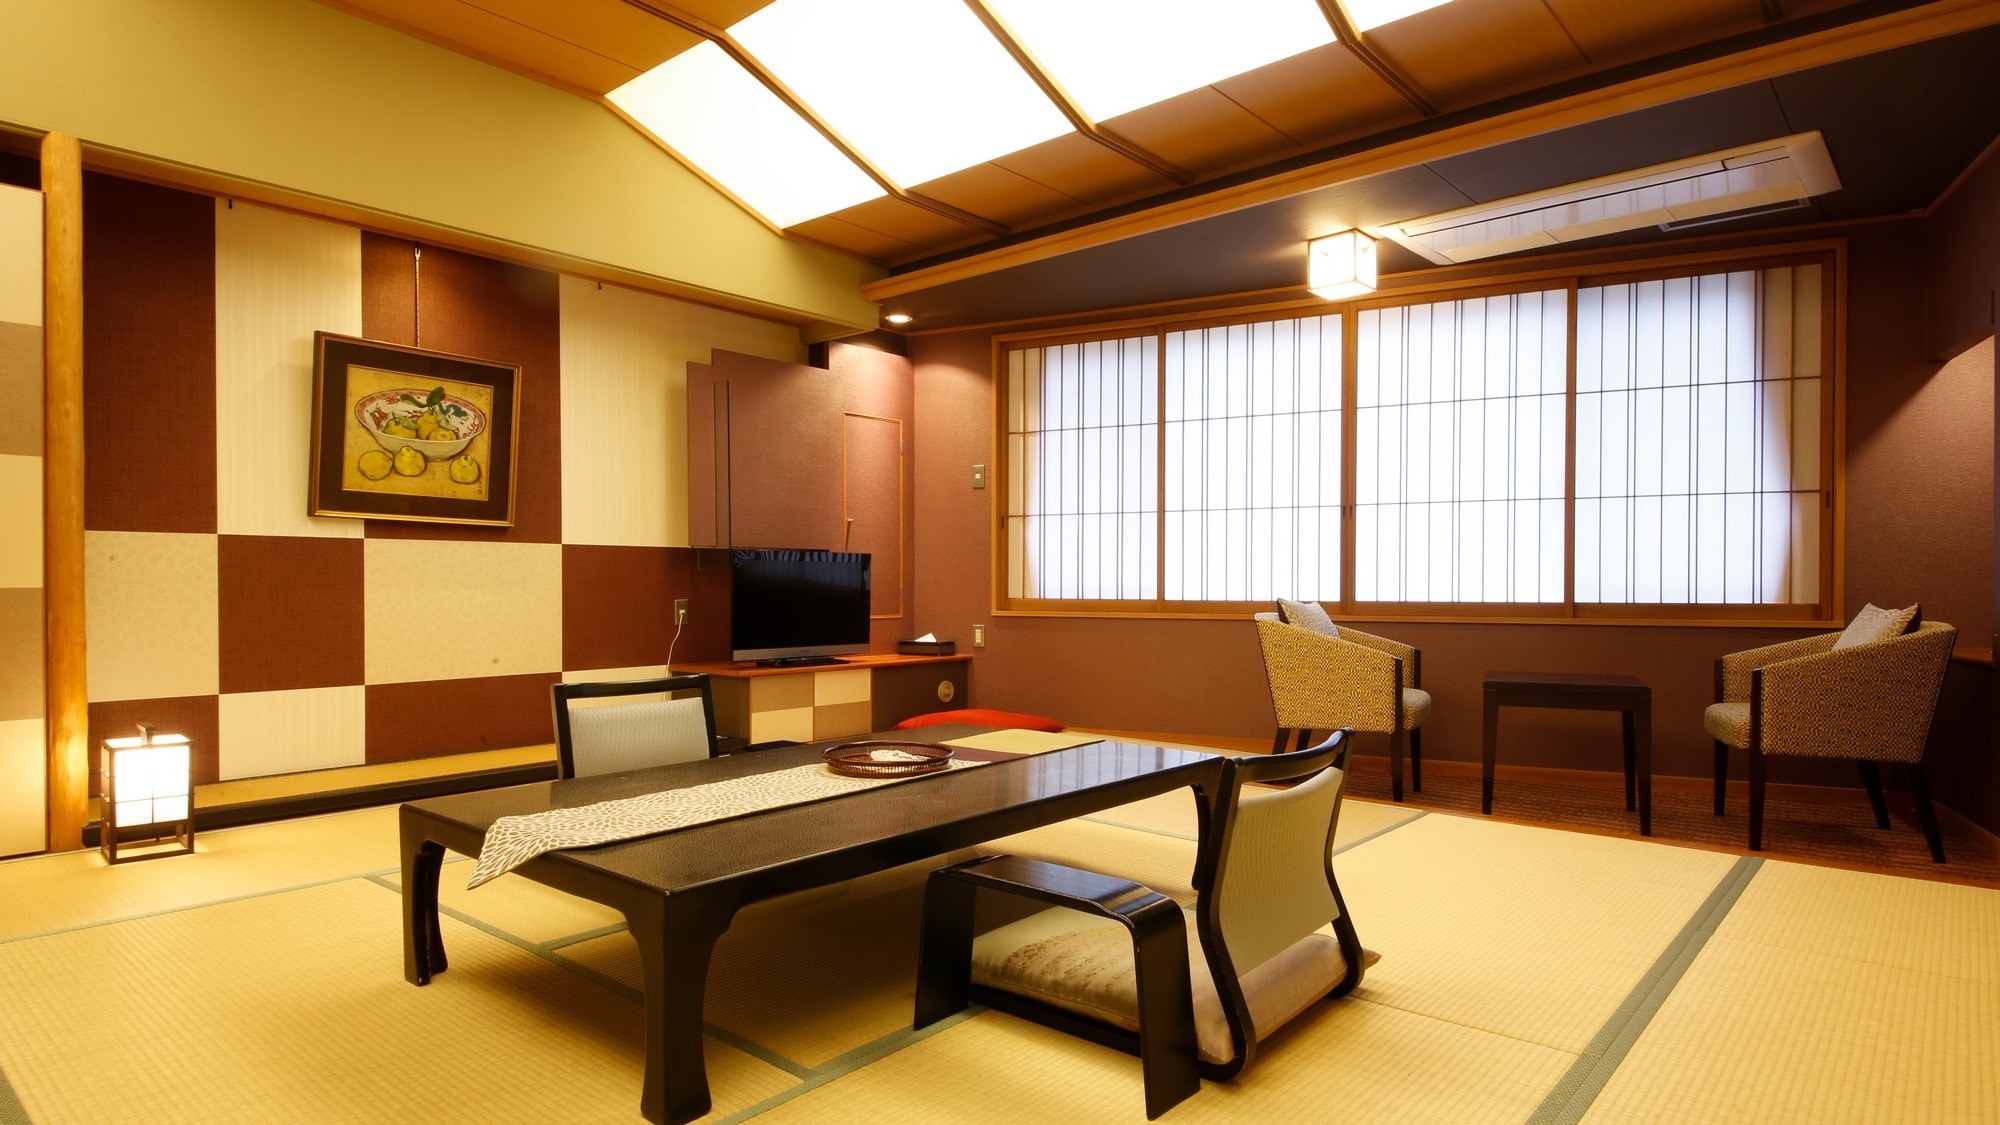 優雅的日式現代豪華客房 <Checkered-ICHIMATSU> 統一的格子圖案和沈穩的紅色。